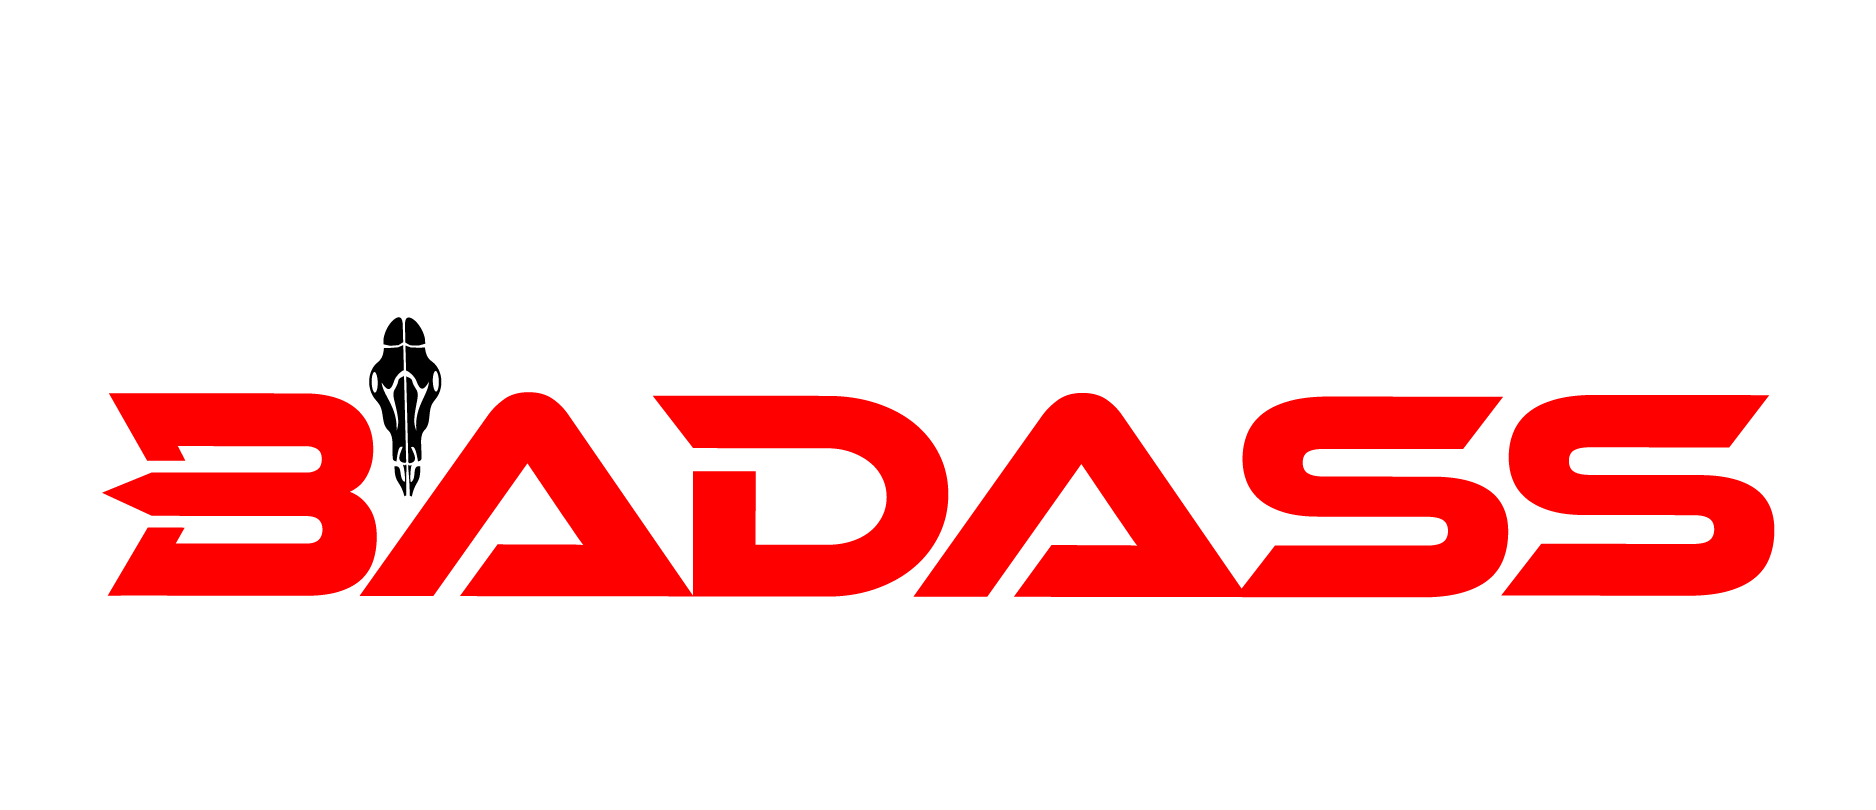 Motocross badass logo